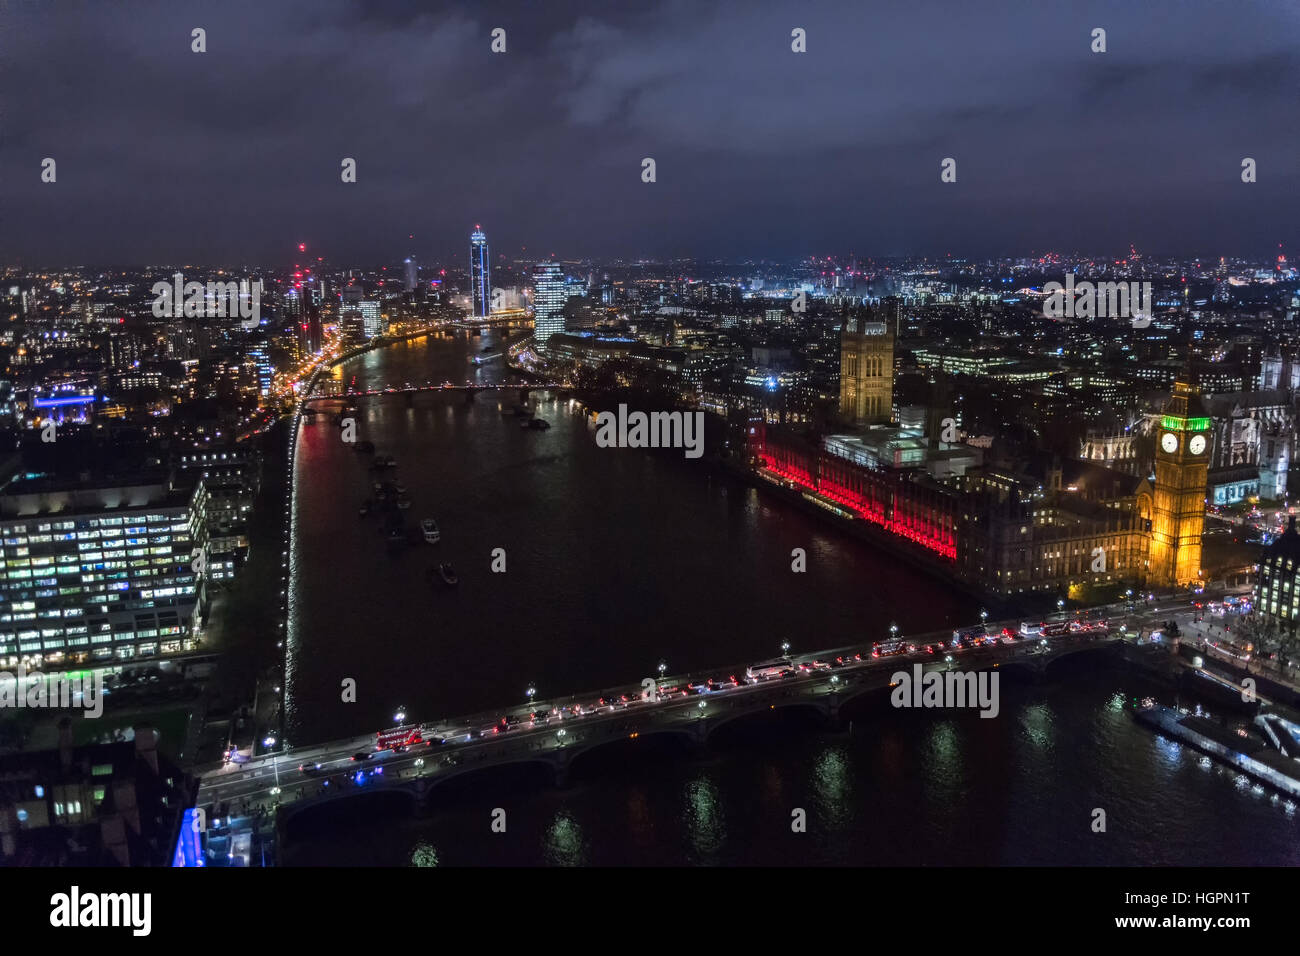 Vue du London Eye de nuit, Londres Uk. Banque D'Images